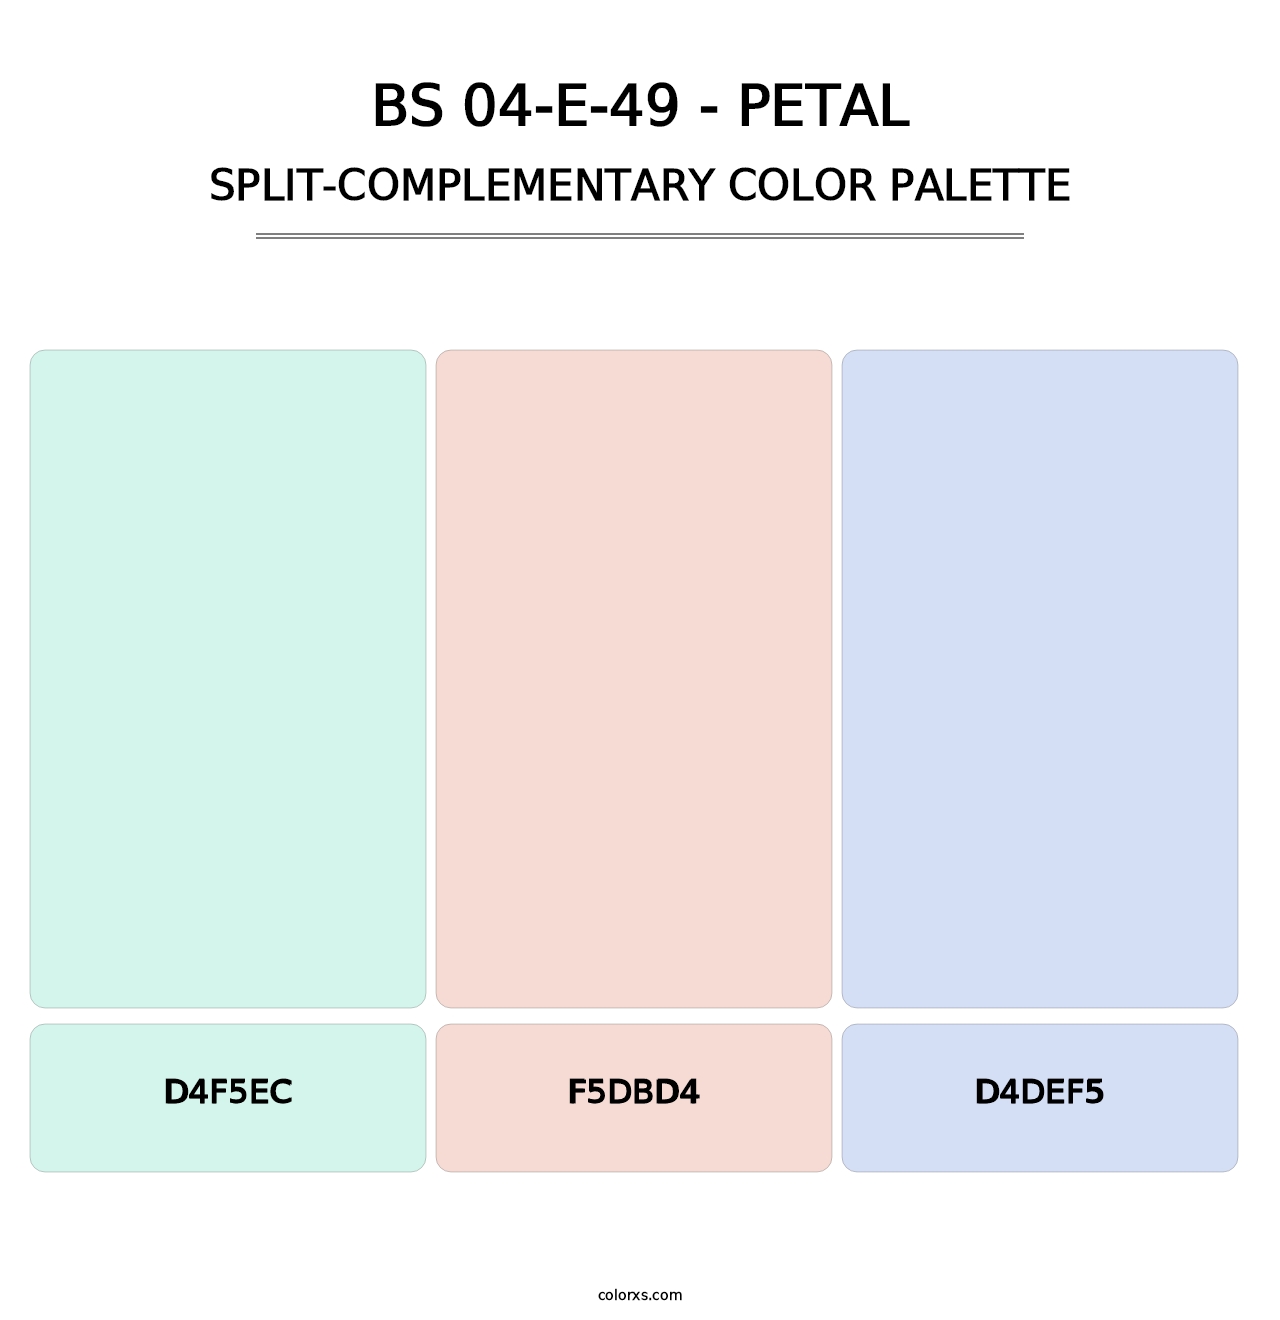 BS 04-E-49 - Petal - Split-Complementary Color Palette